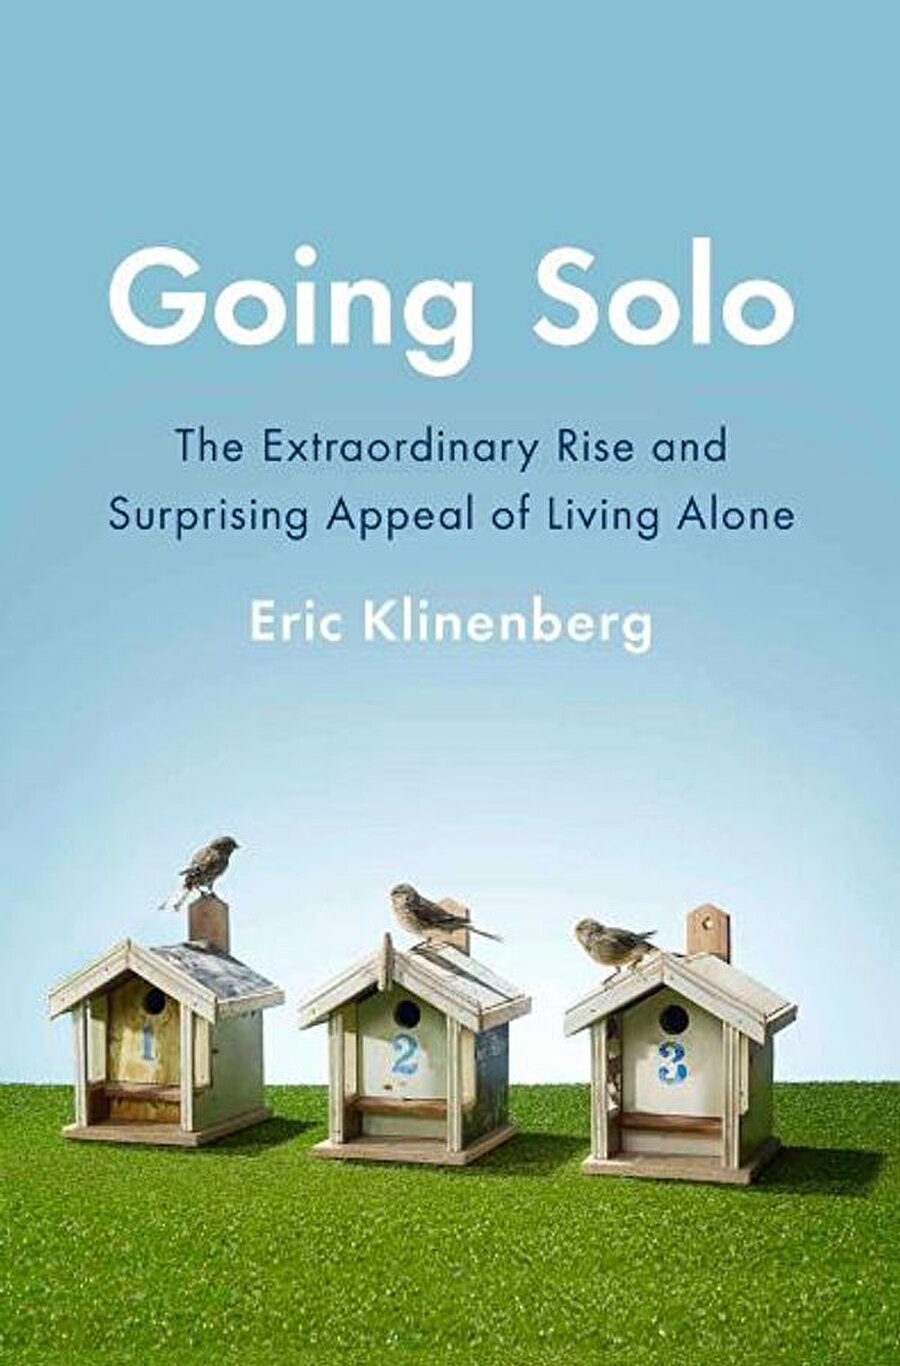 Klinenberg’e göre bugün dünden farklı olarak solo yaşamın bu kadar artış göstermesinin sebebi insanların yalnız yaşamanın beraberinde getireceği ekonomik yükleri karşılayabiliyor olmasıdır.